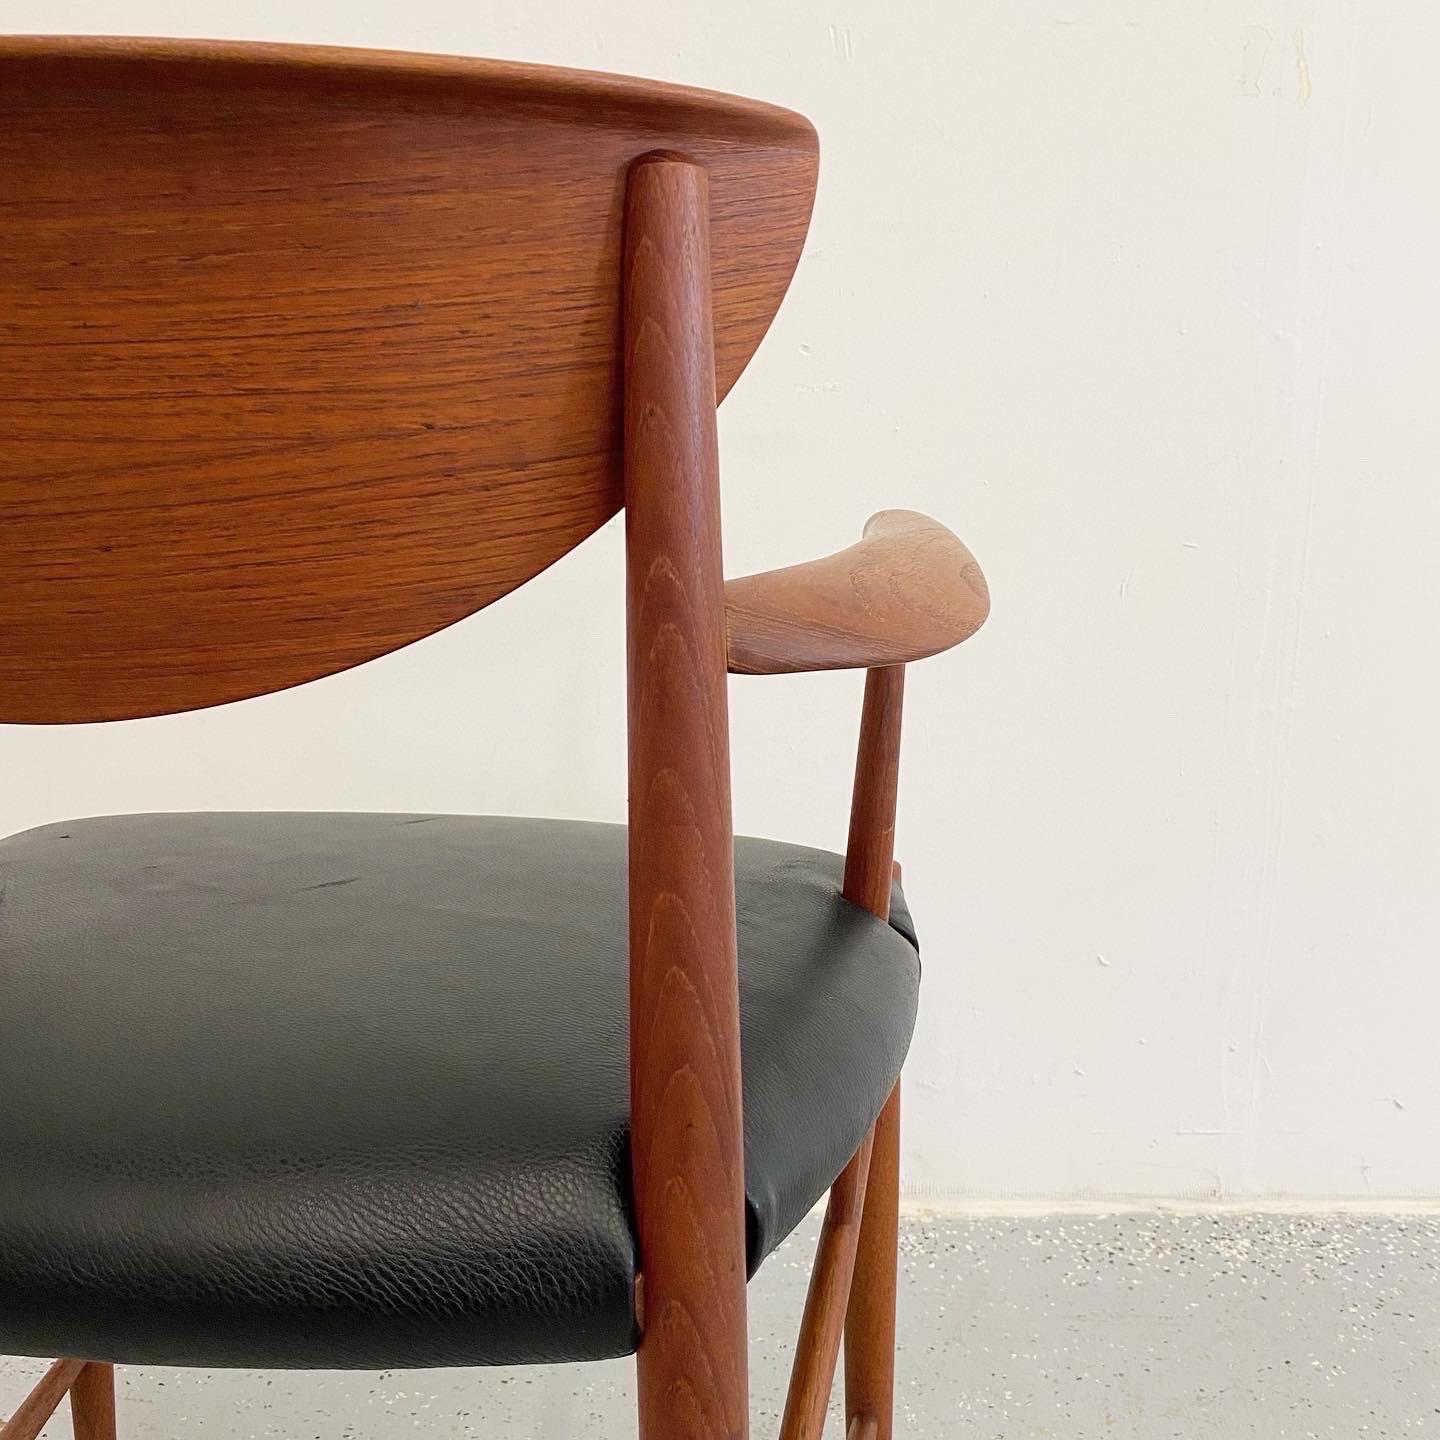 Excellent ensemble de quatre fauteuils danois de Peter Hvidt & Orla Mølgaard Nielsen. Les cadres en teck sculpté sont en très bon état et les sièges en cuir ont été récemment rembourrés et présentent des éraflures mineures. Les chaises sont robustes